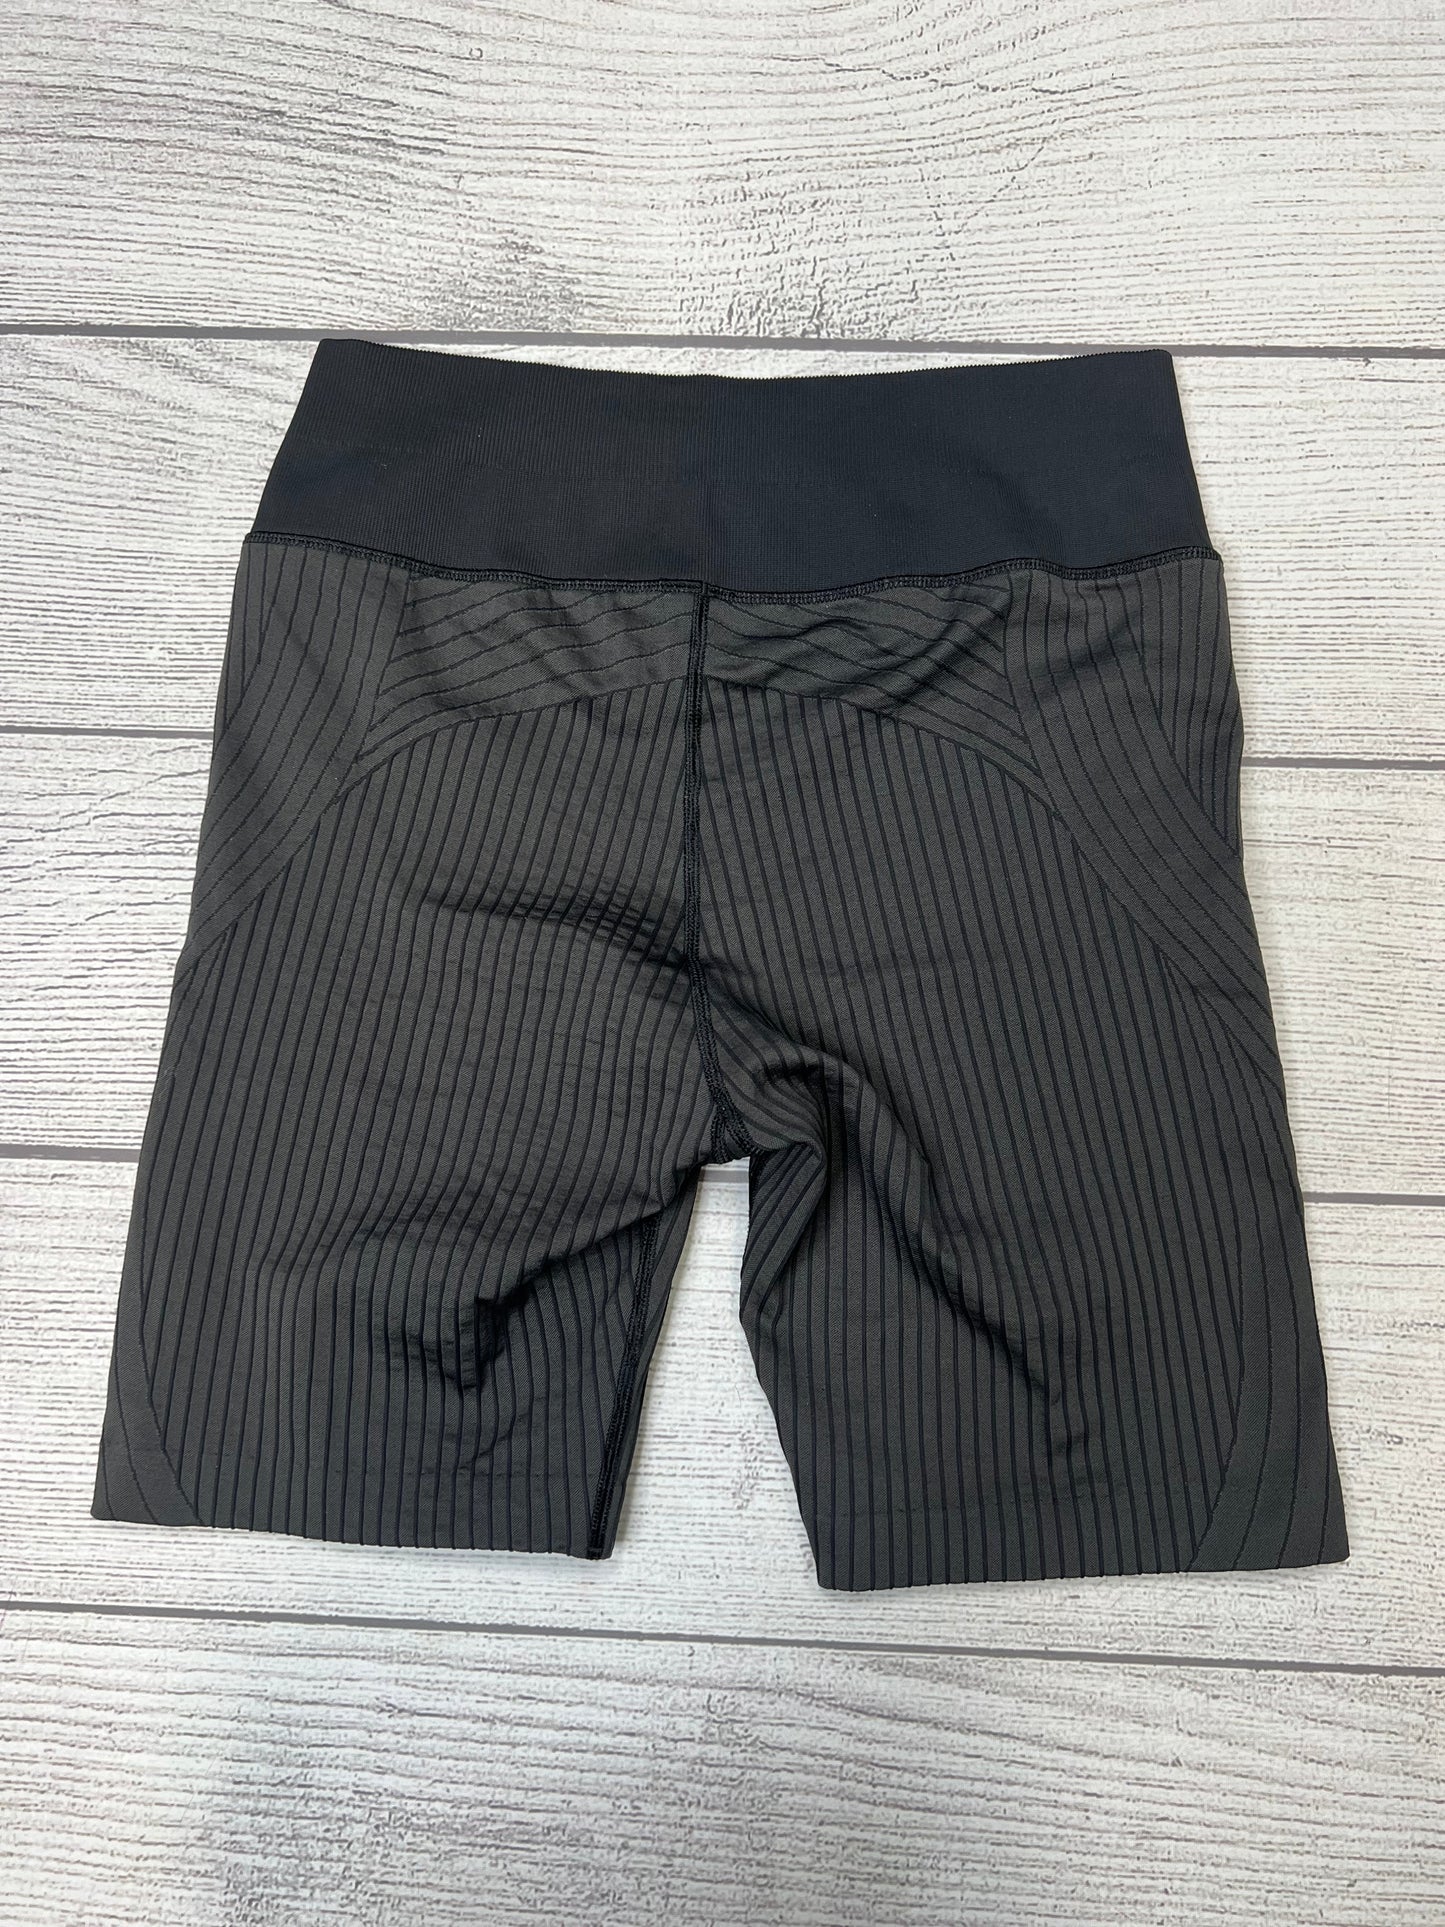 Grey Athletic Shorts Lululemon, Size M